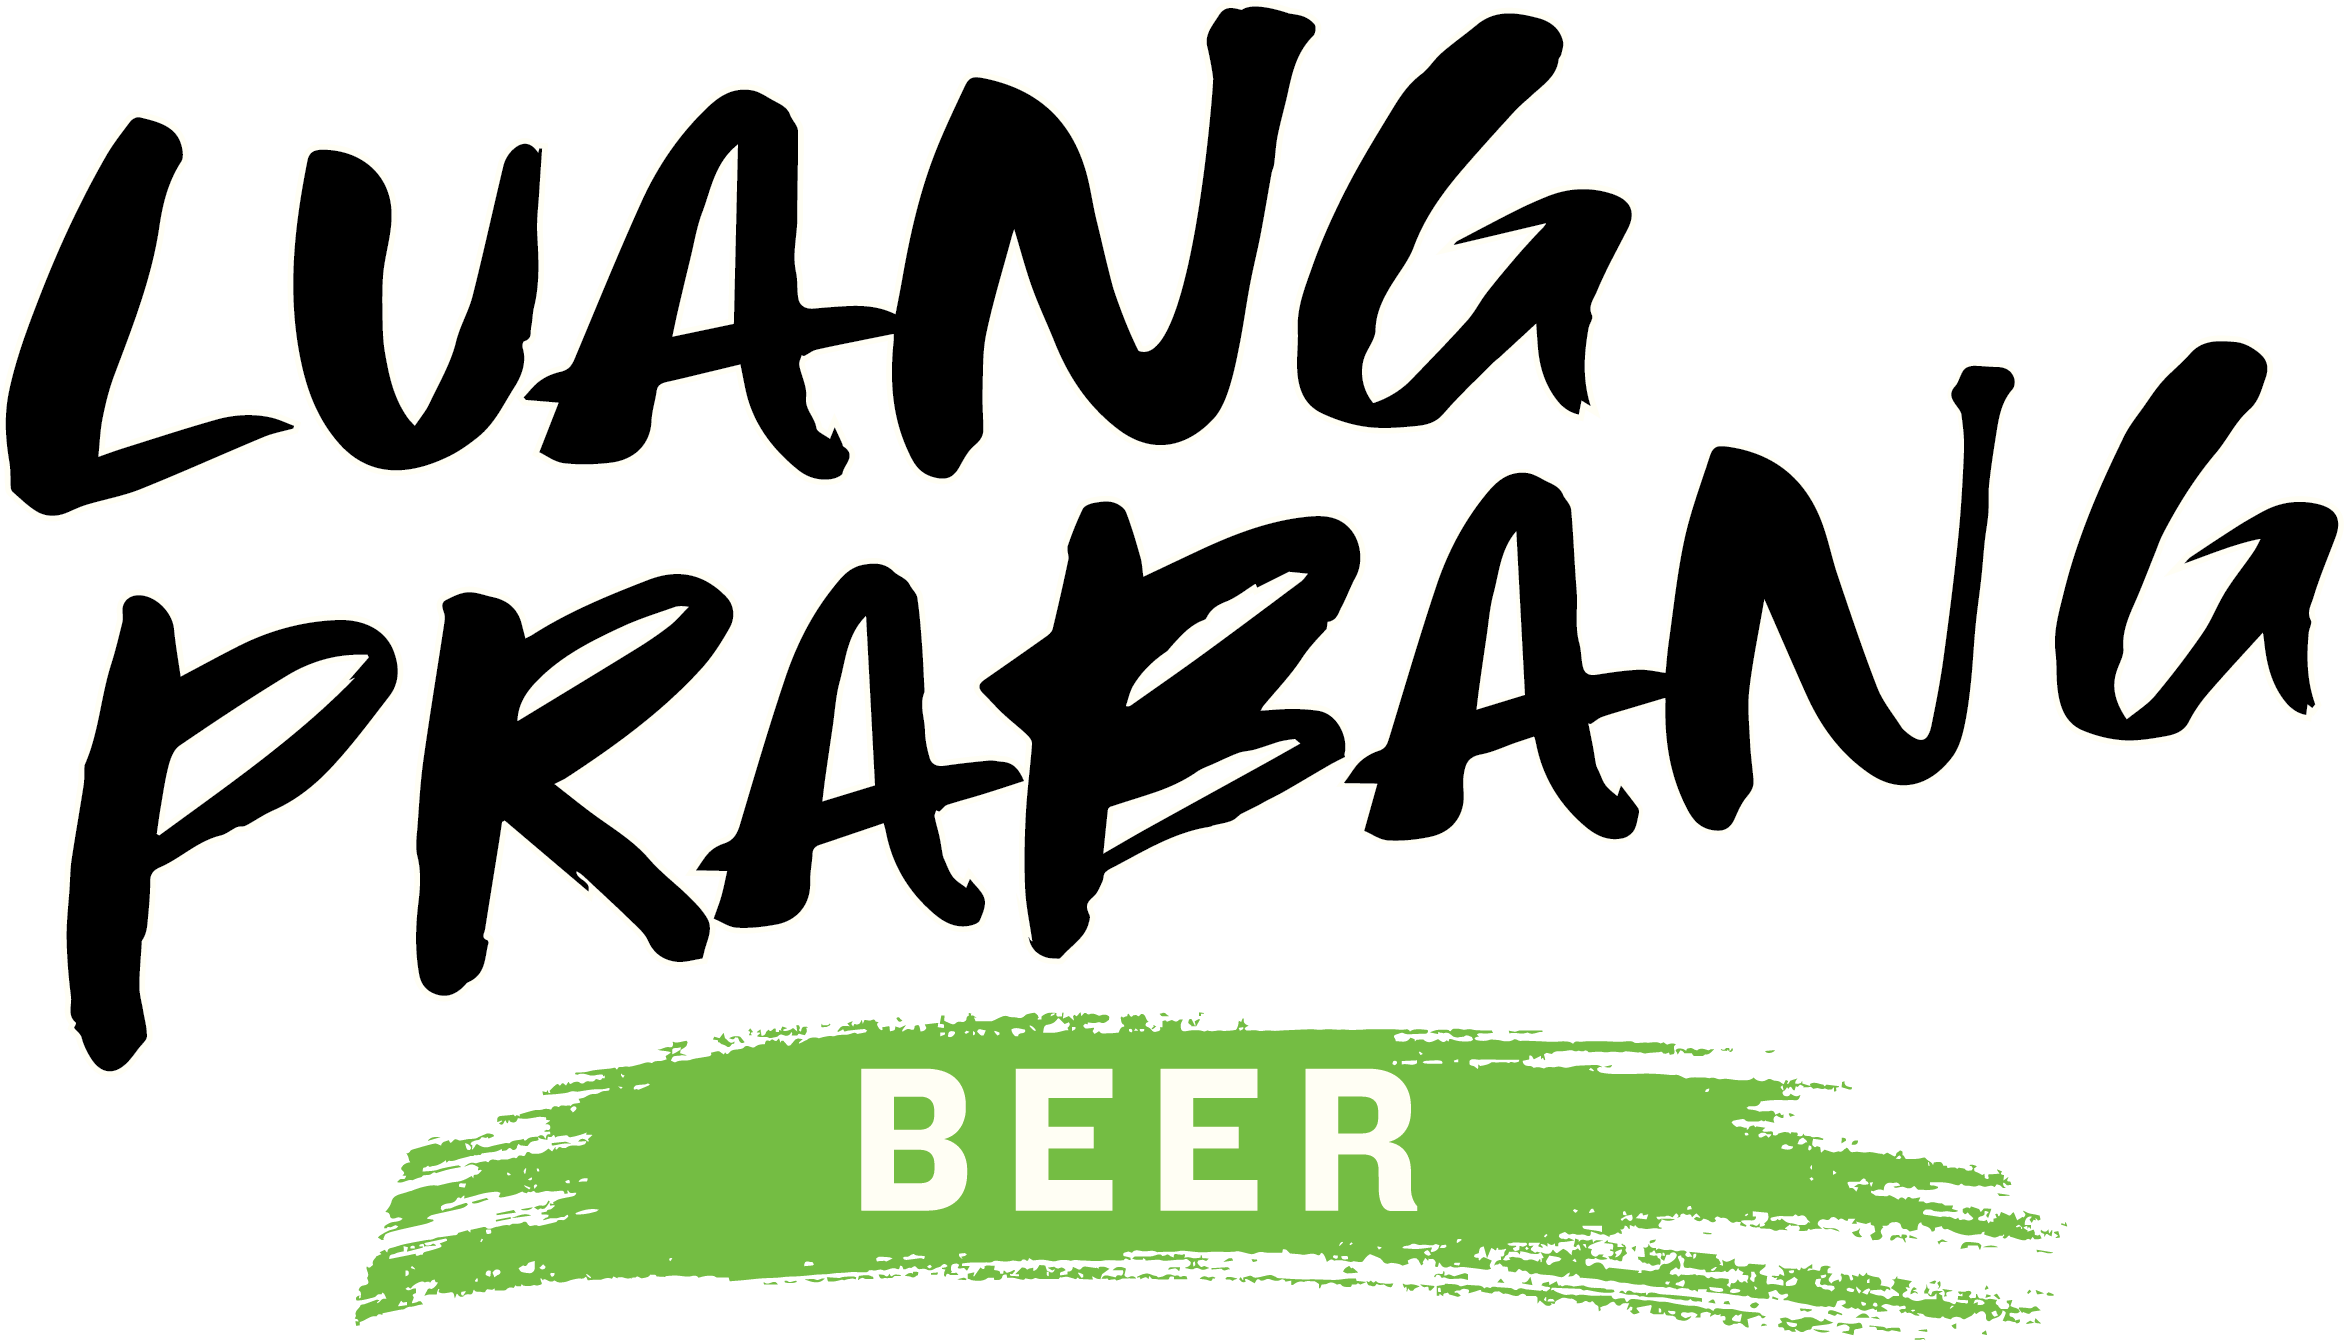 Luang Prabang Beer